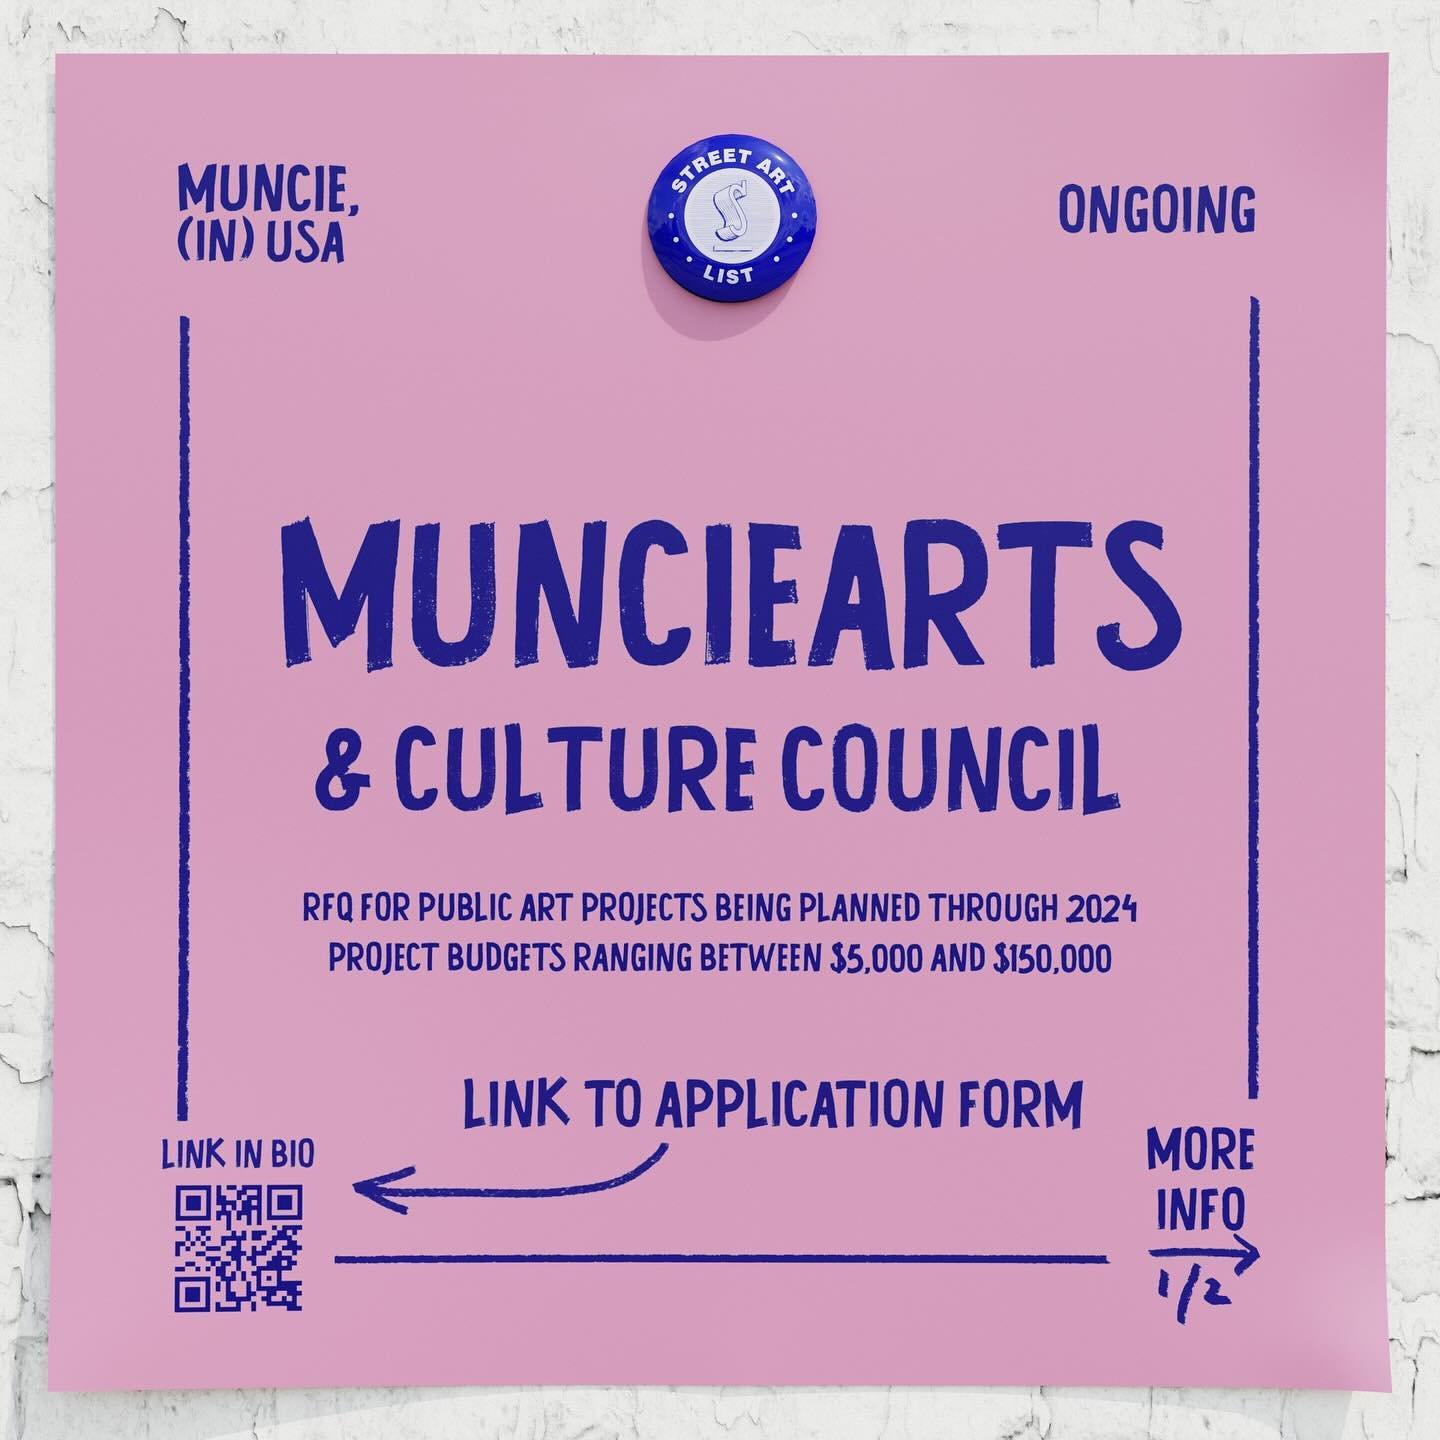 MuncieArts & Culture Council